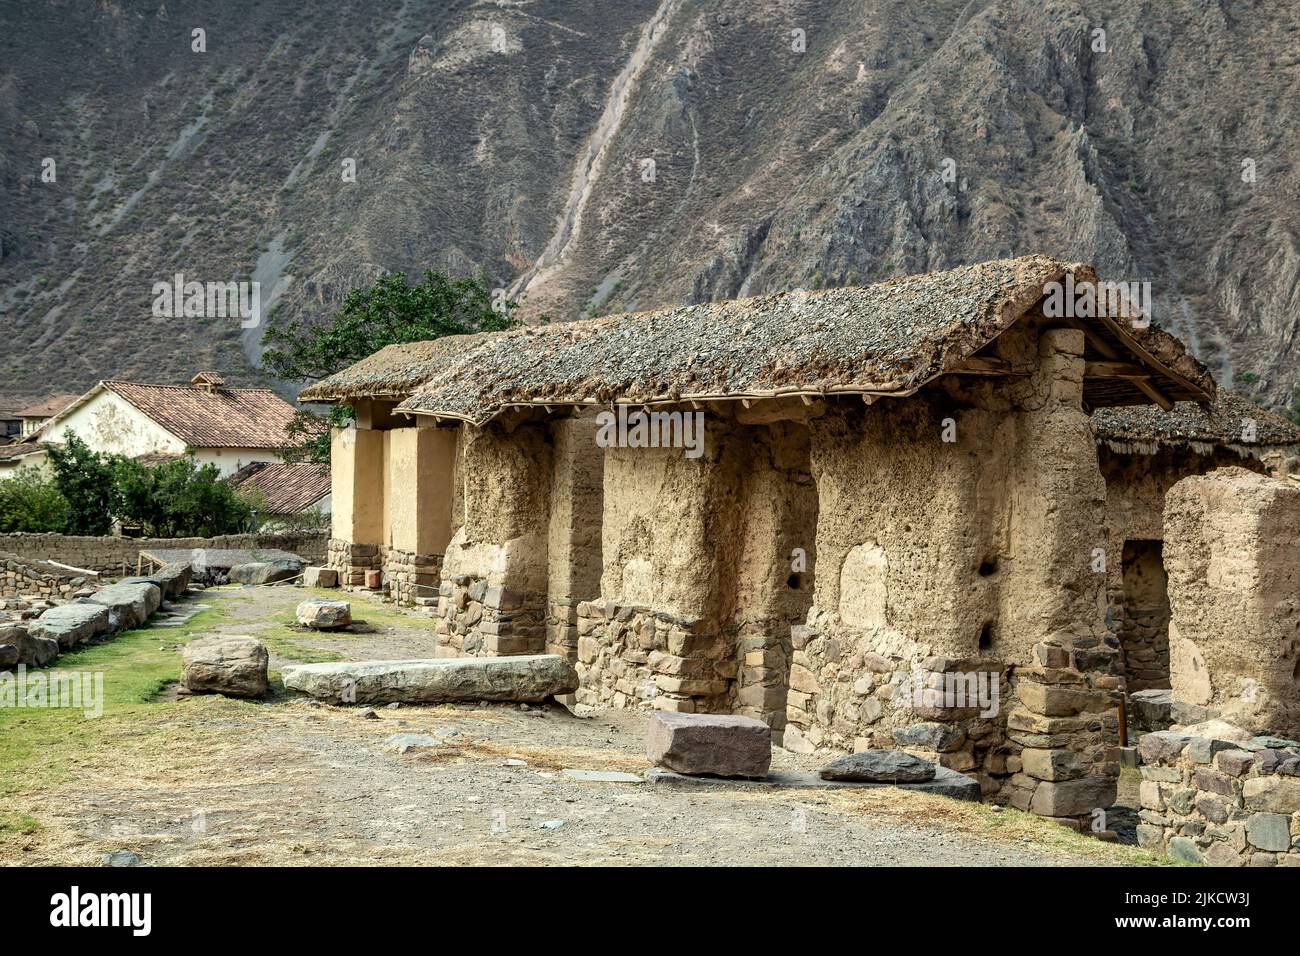 Thatch-covered structures, Ollantaytambo Inca ruins, Ollantaytambo, Urubamba, Cusco, Peru Stock Photo